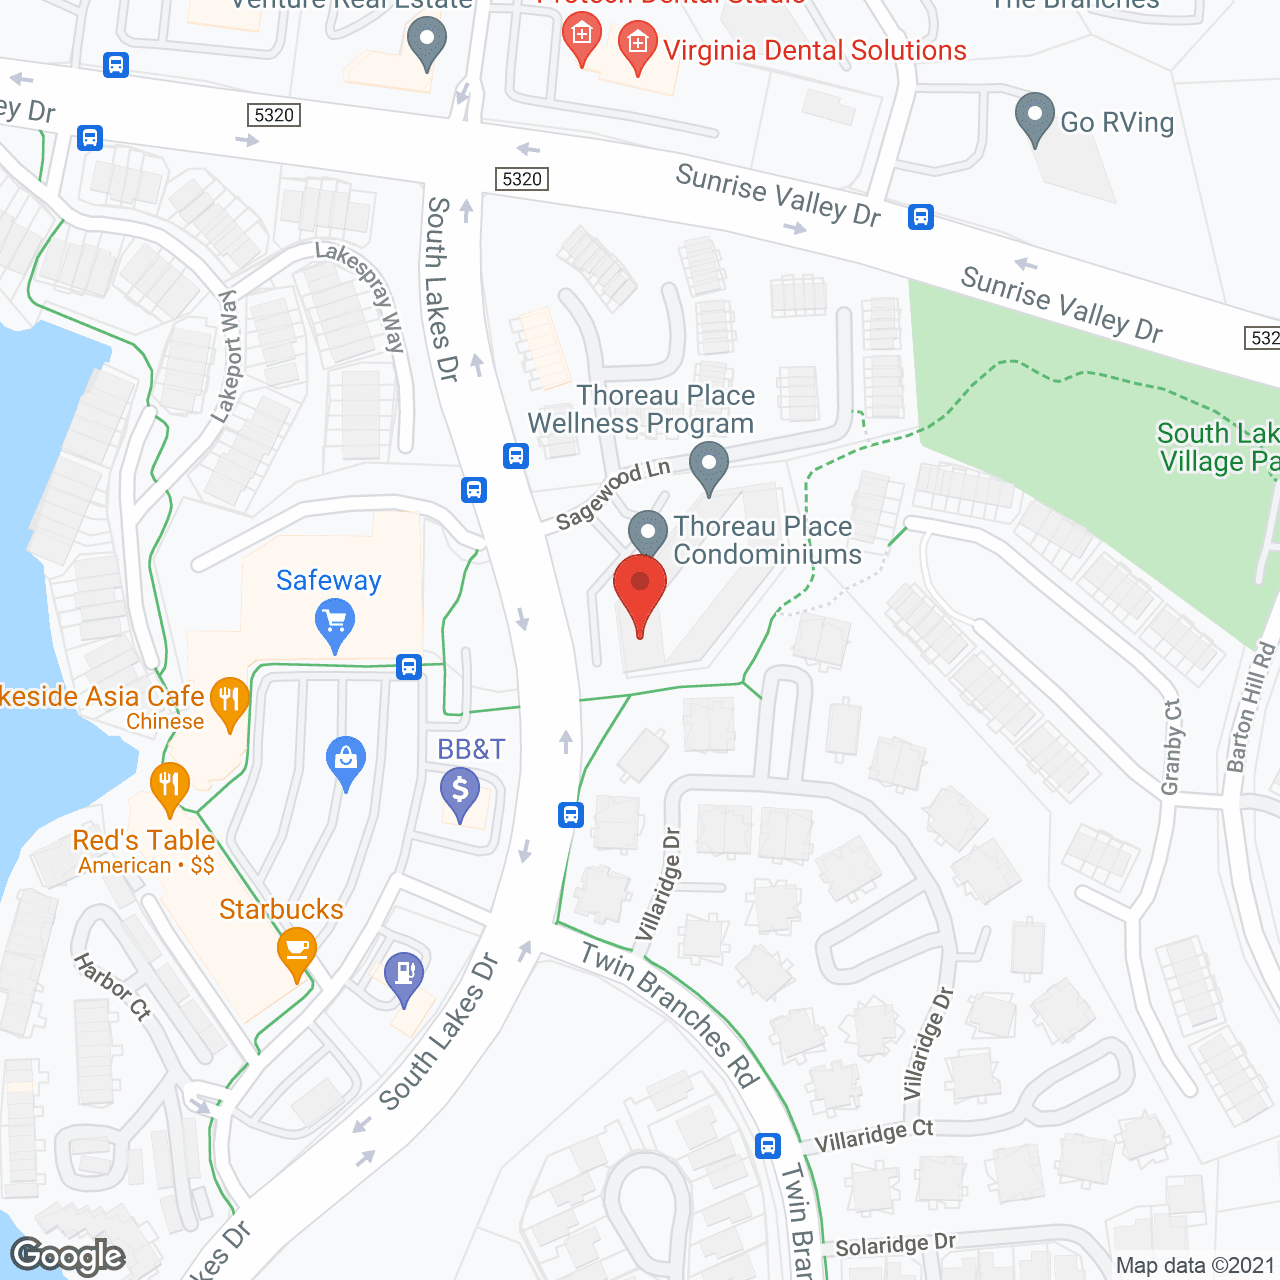 Thoreau Place Condominiums in google map